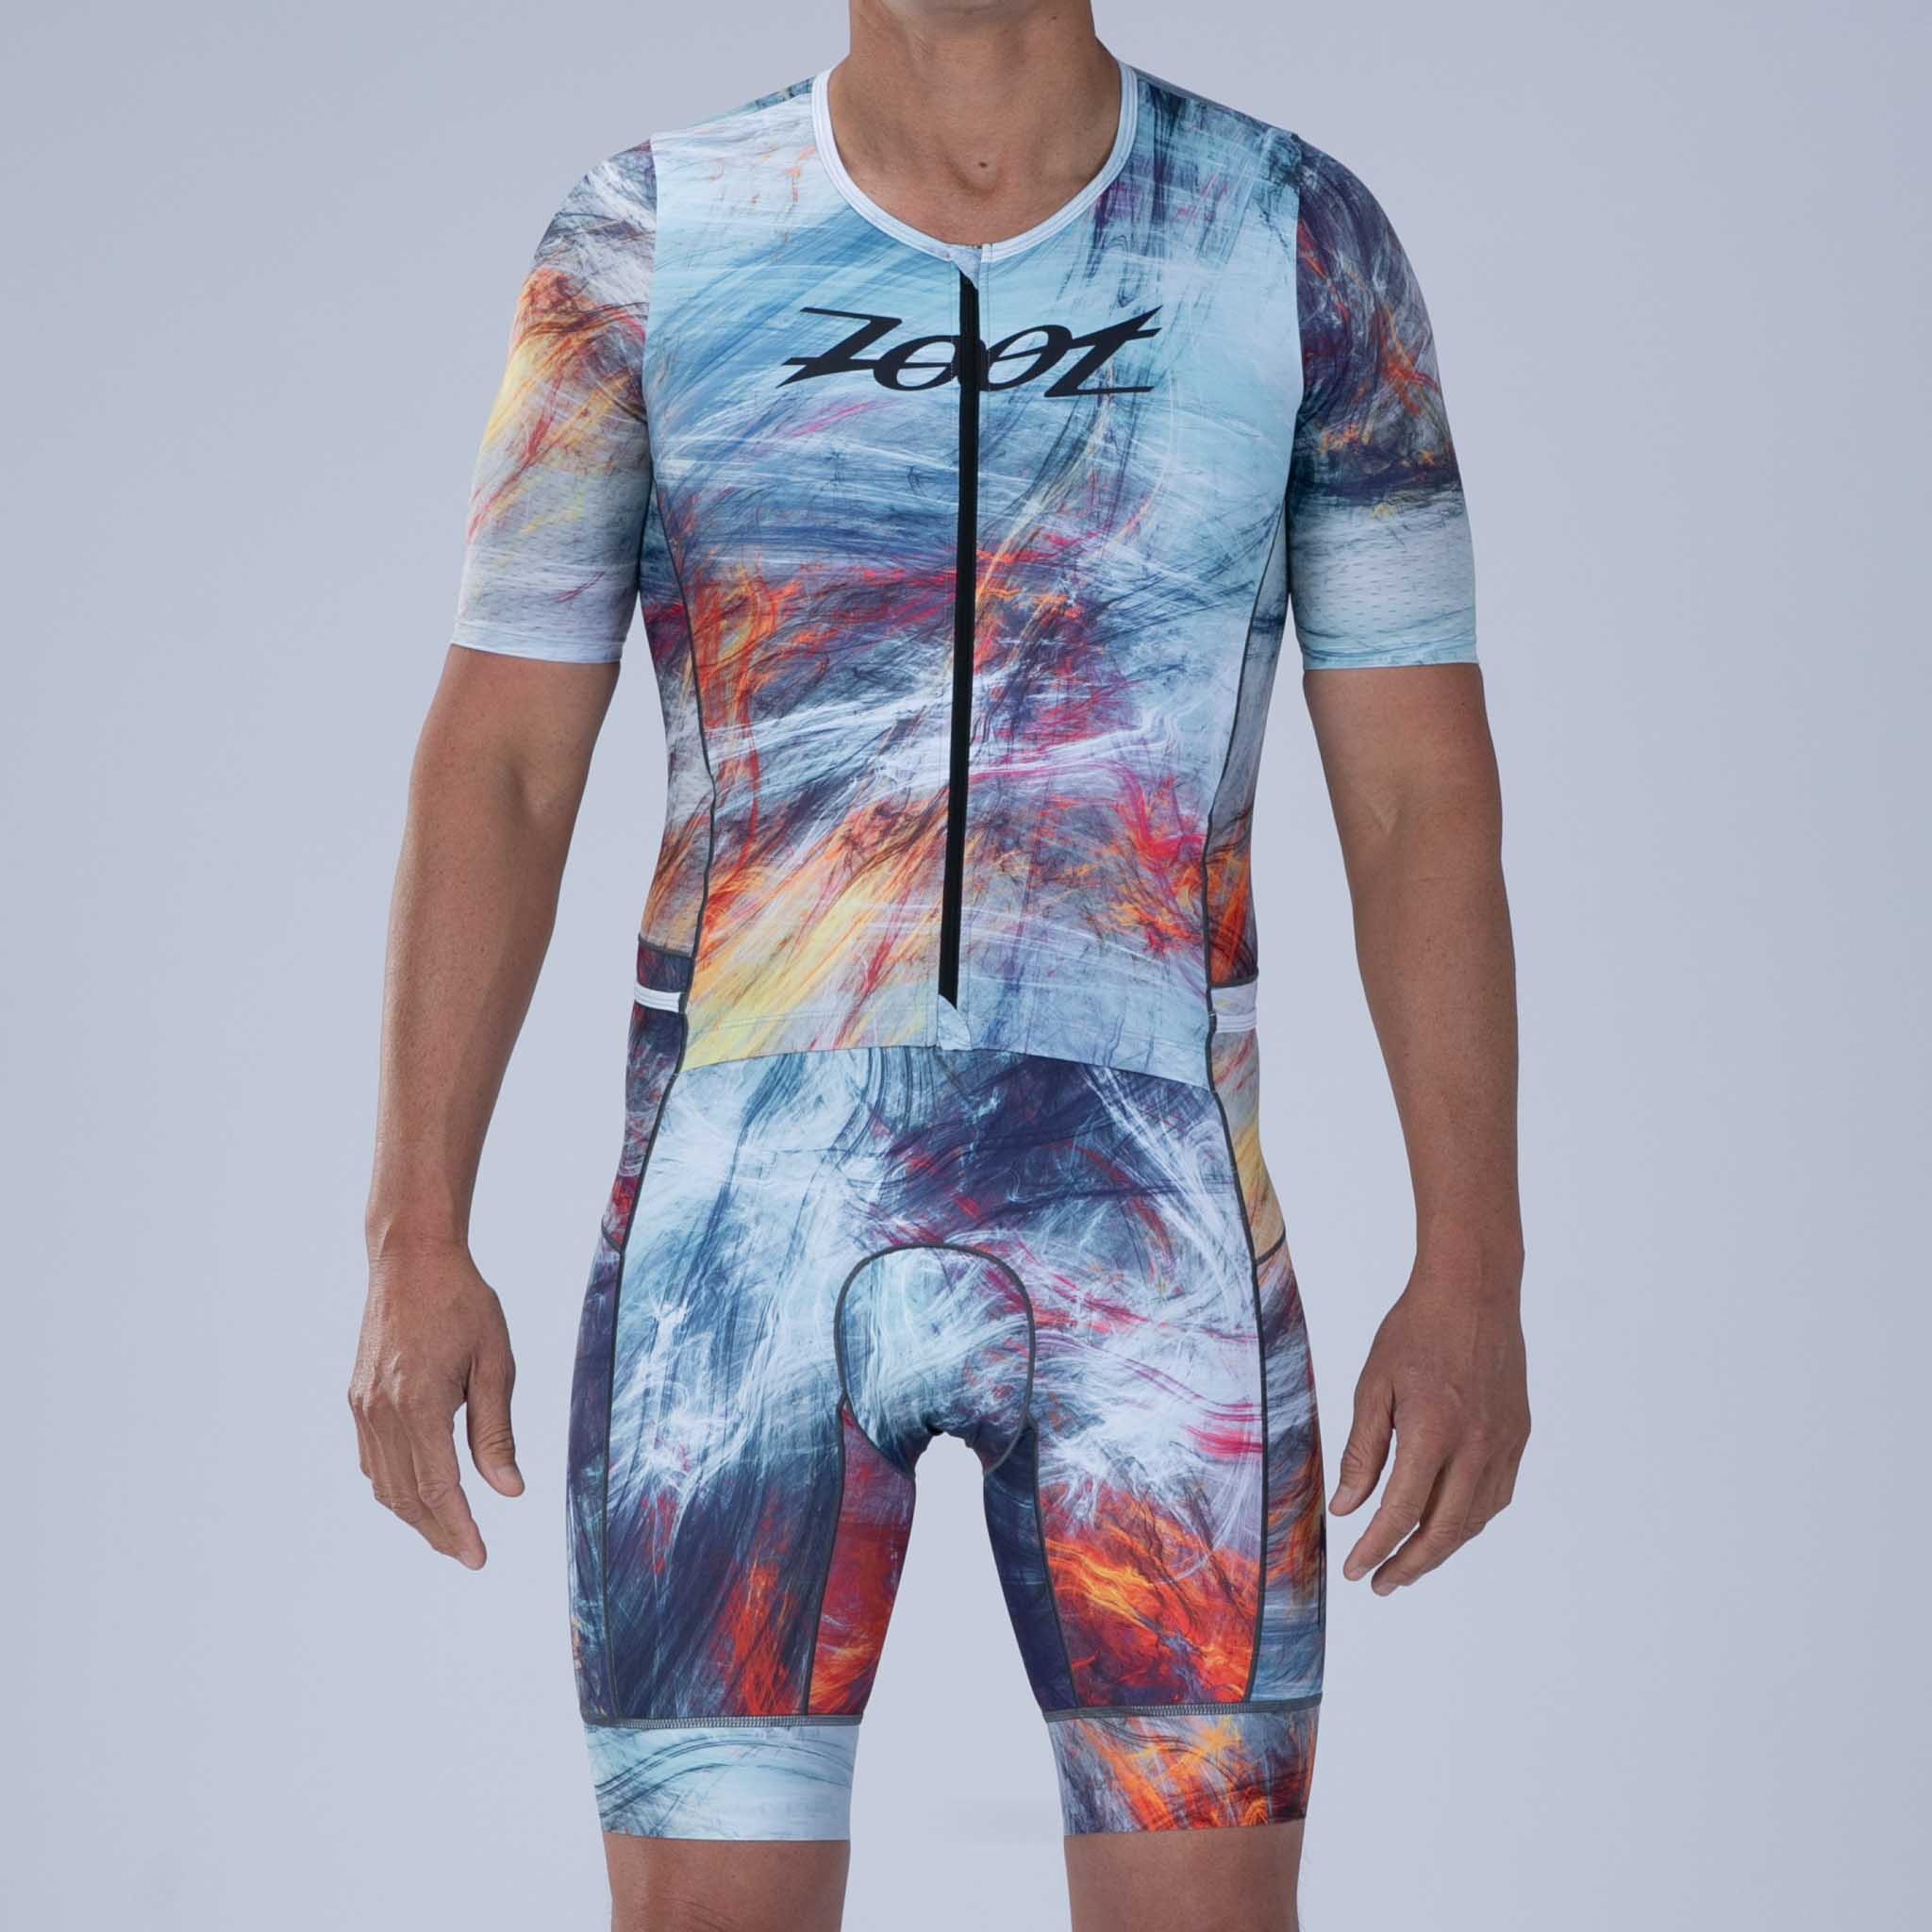 Zoot Sports TRI RACESUITS Men's Ltd Tri Aero Fz Racesuit - Energy